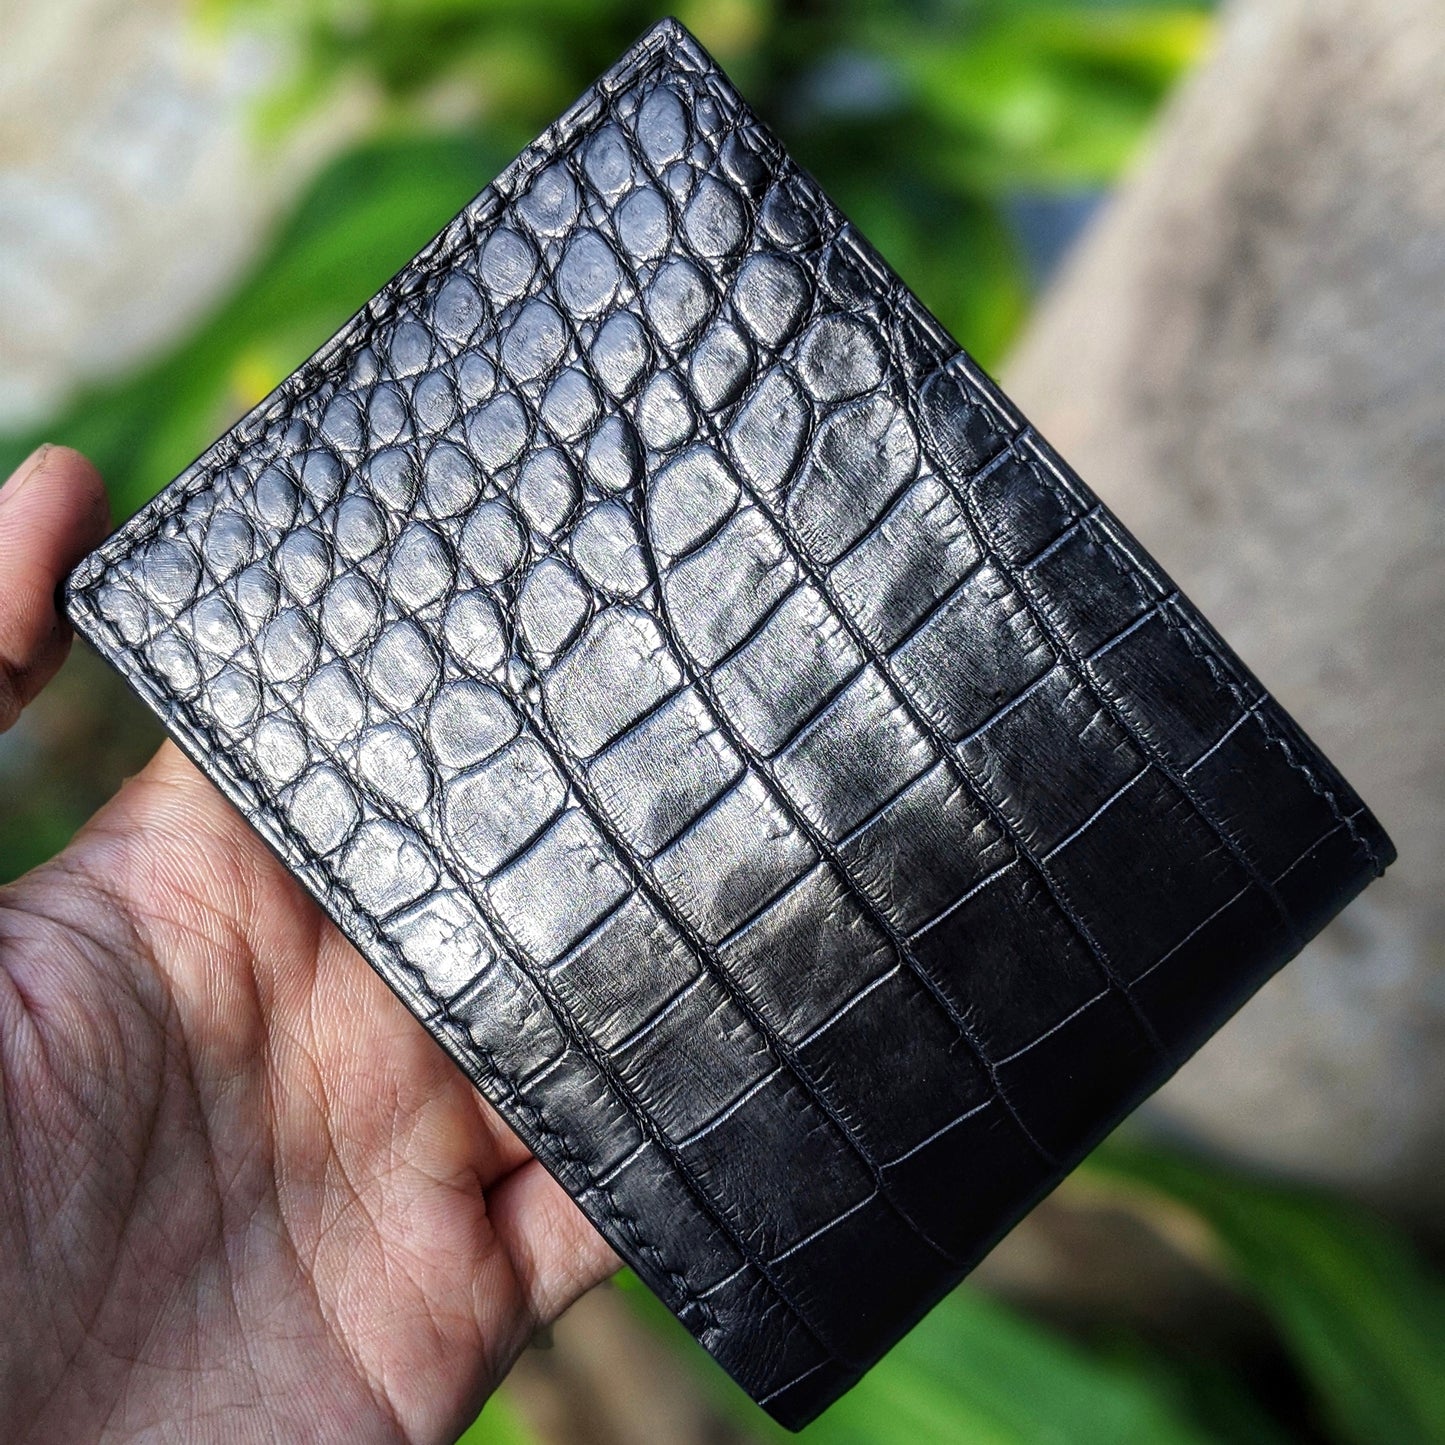 Black Alligator Leather Wallet